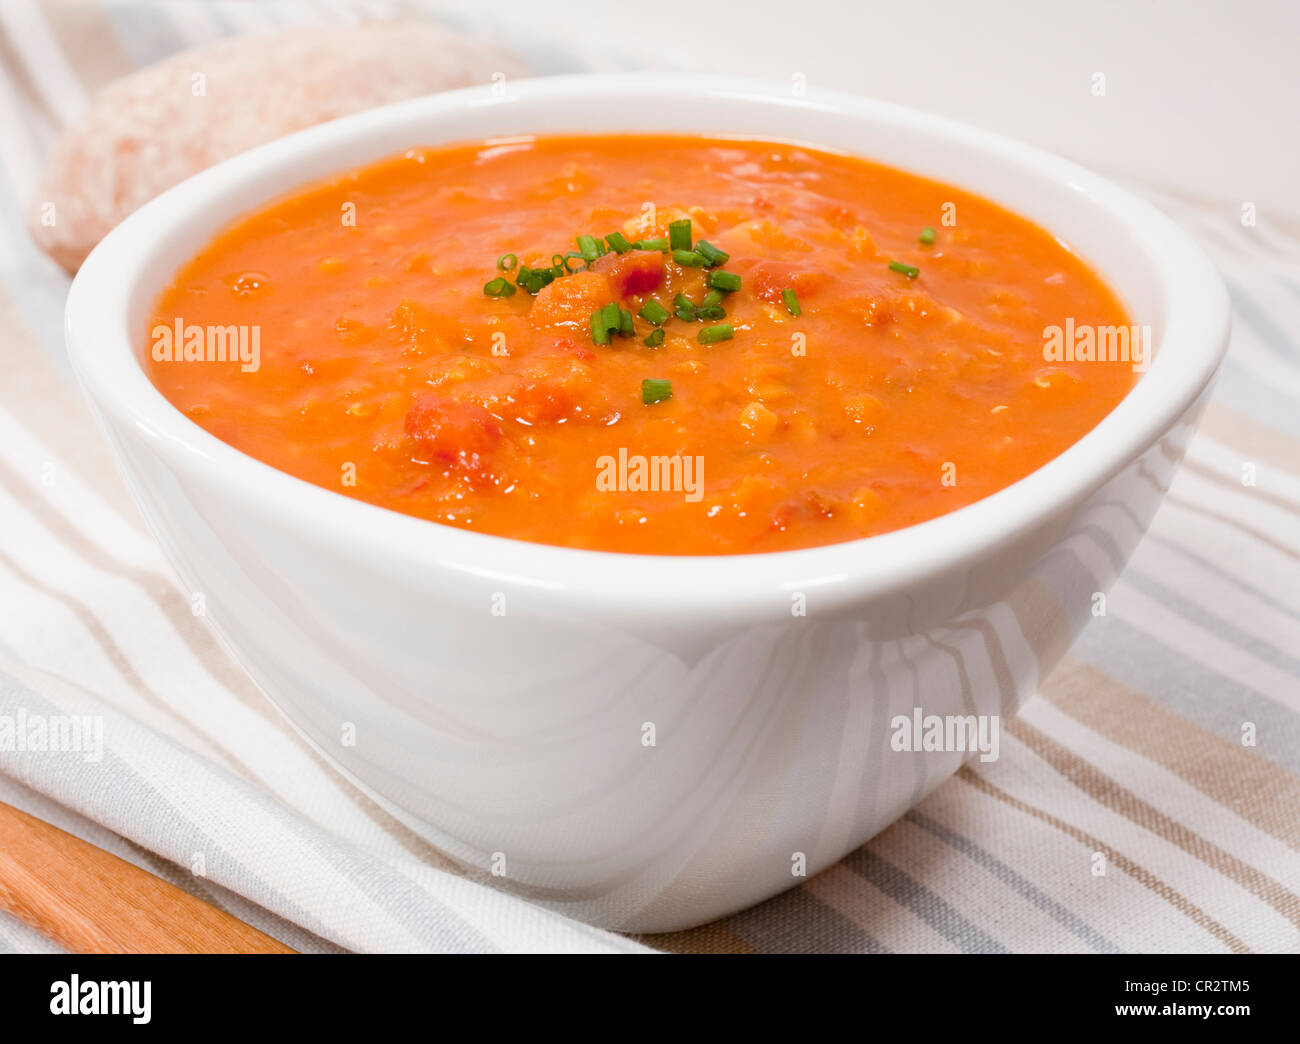 Una ciotola di lenticchie e zuppa di pomodoro guarnita con erba cipollina. Foto Stock